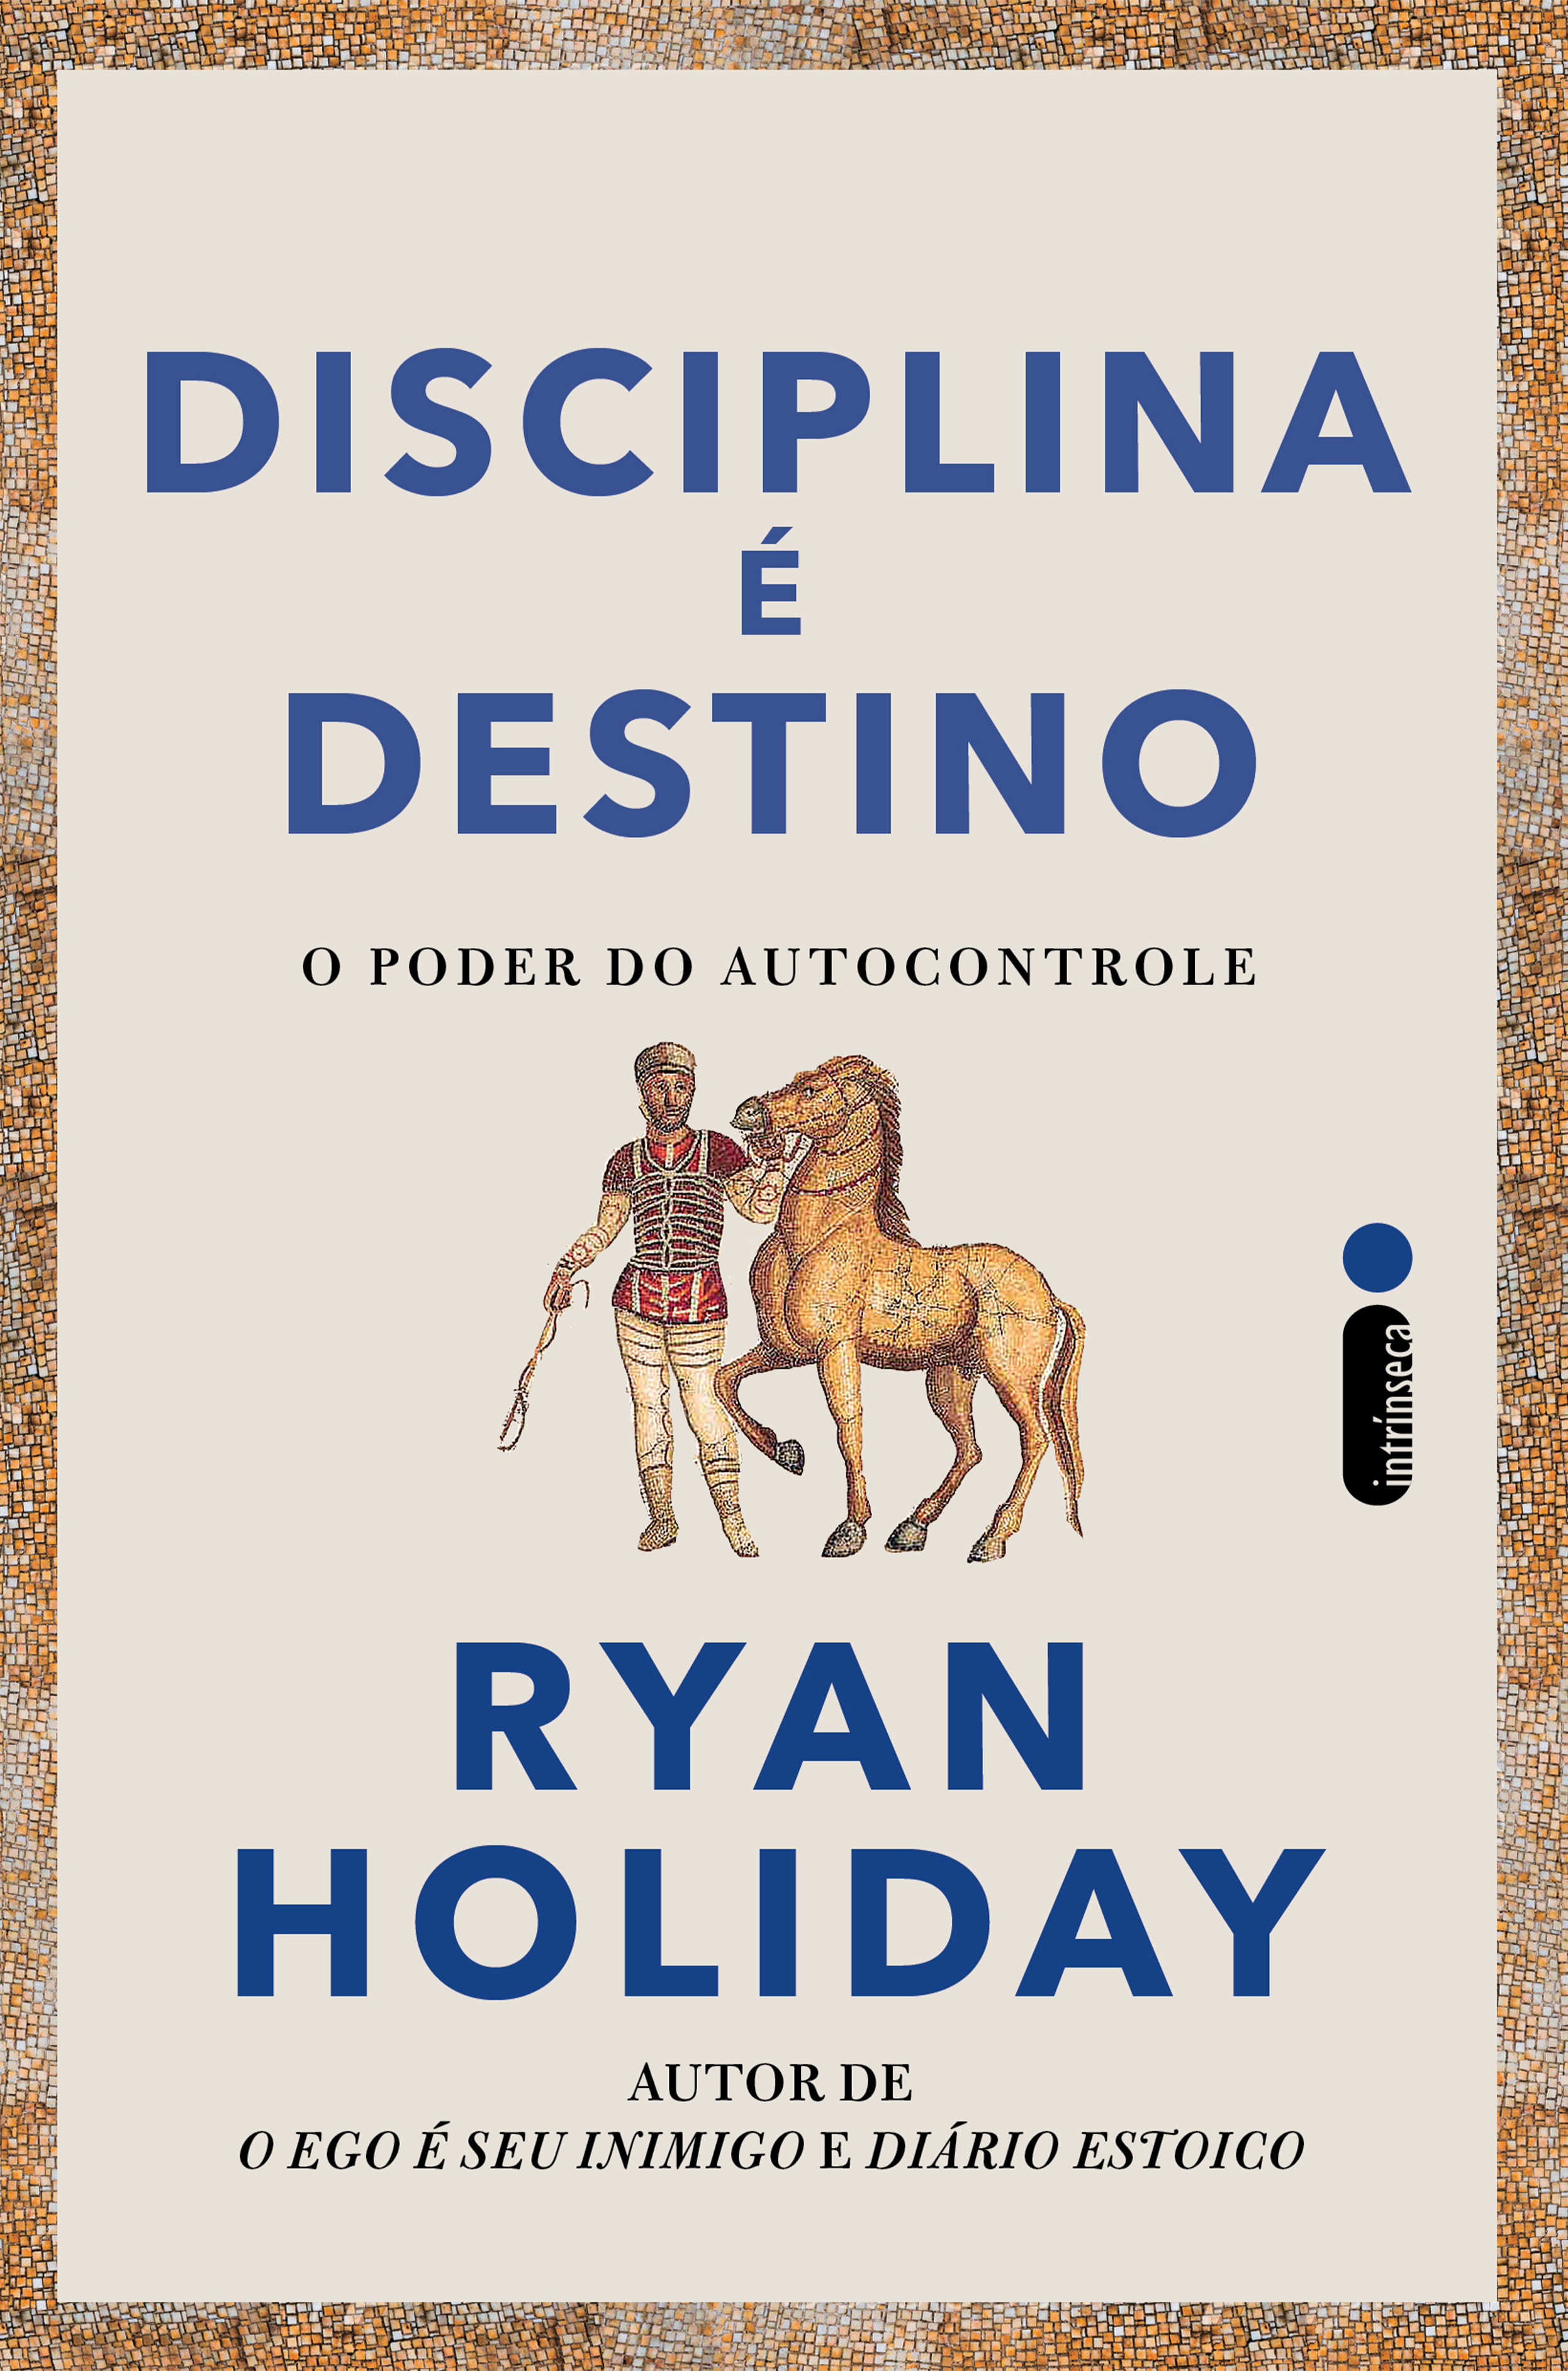 Novo livro do Ryan Holiday ensina como colocar a disciplina em prática